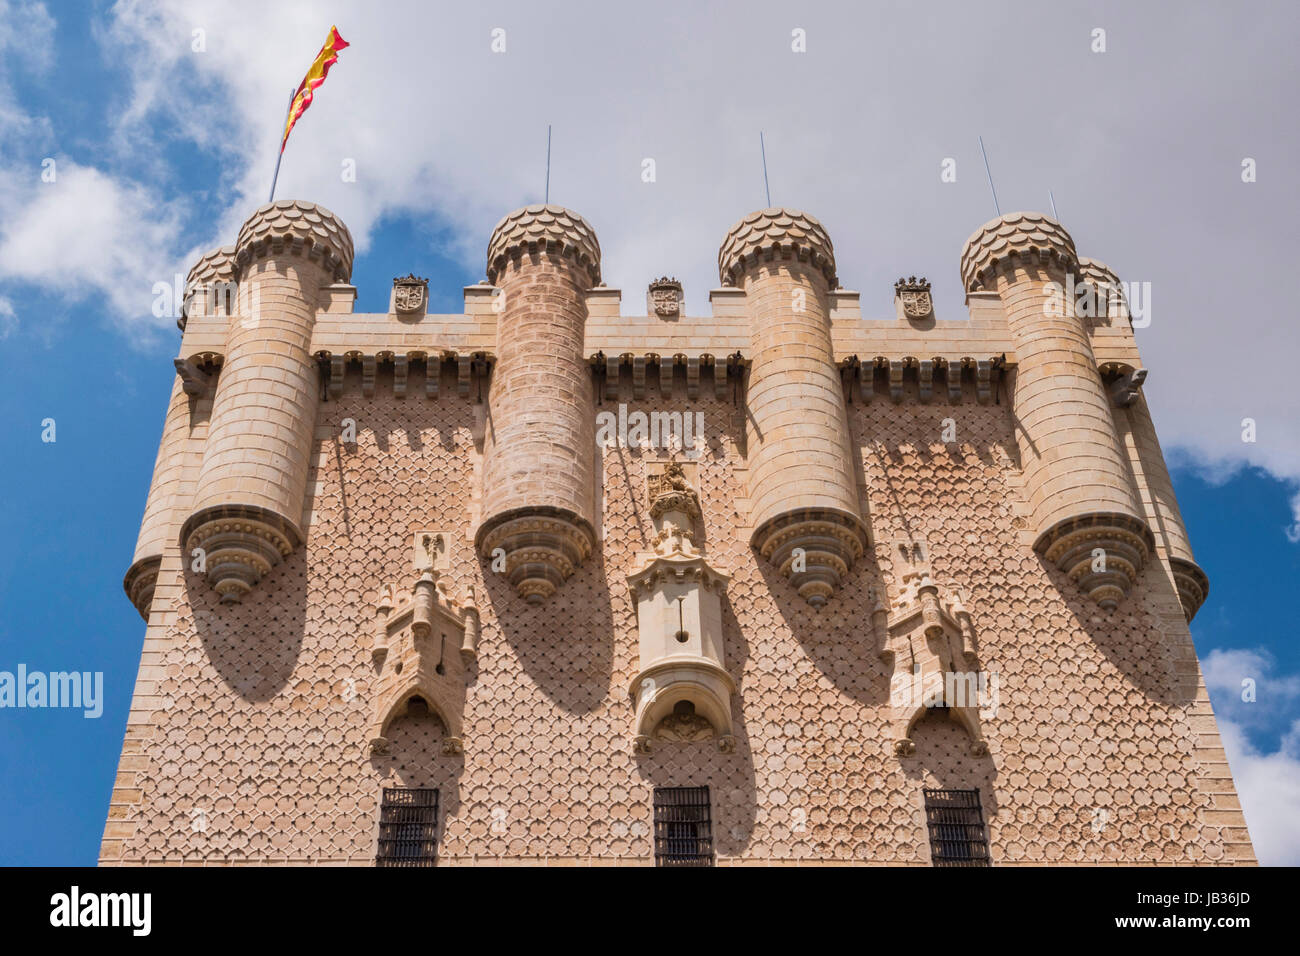 Segovia, Spanien - Juni 3: Teilansicht des Schlosses vom Eingang zum Denkmal und Zugbrücke, Juan II Turm erhebt sich auf einer felsigen Klippe, gebaut Stockfoto